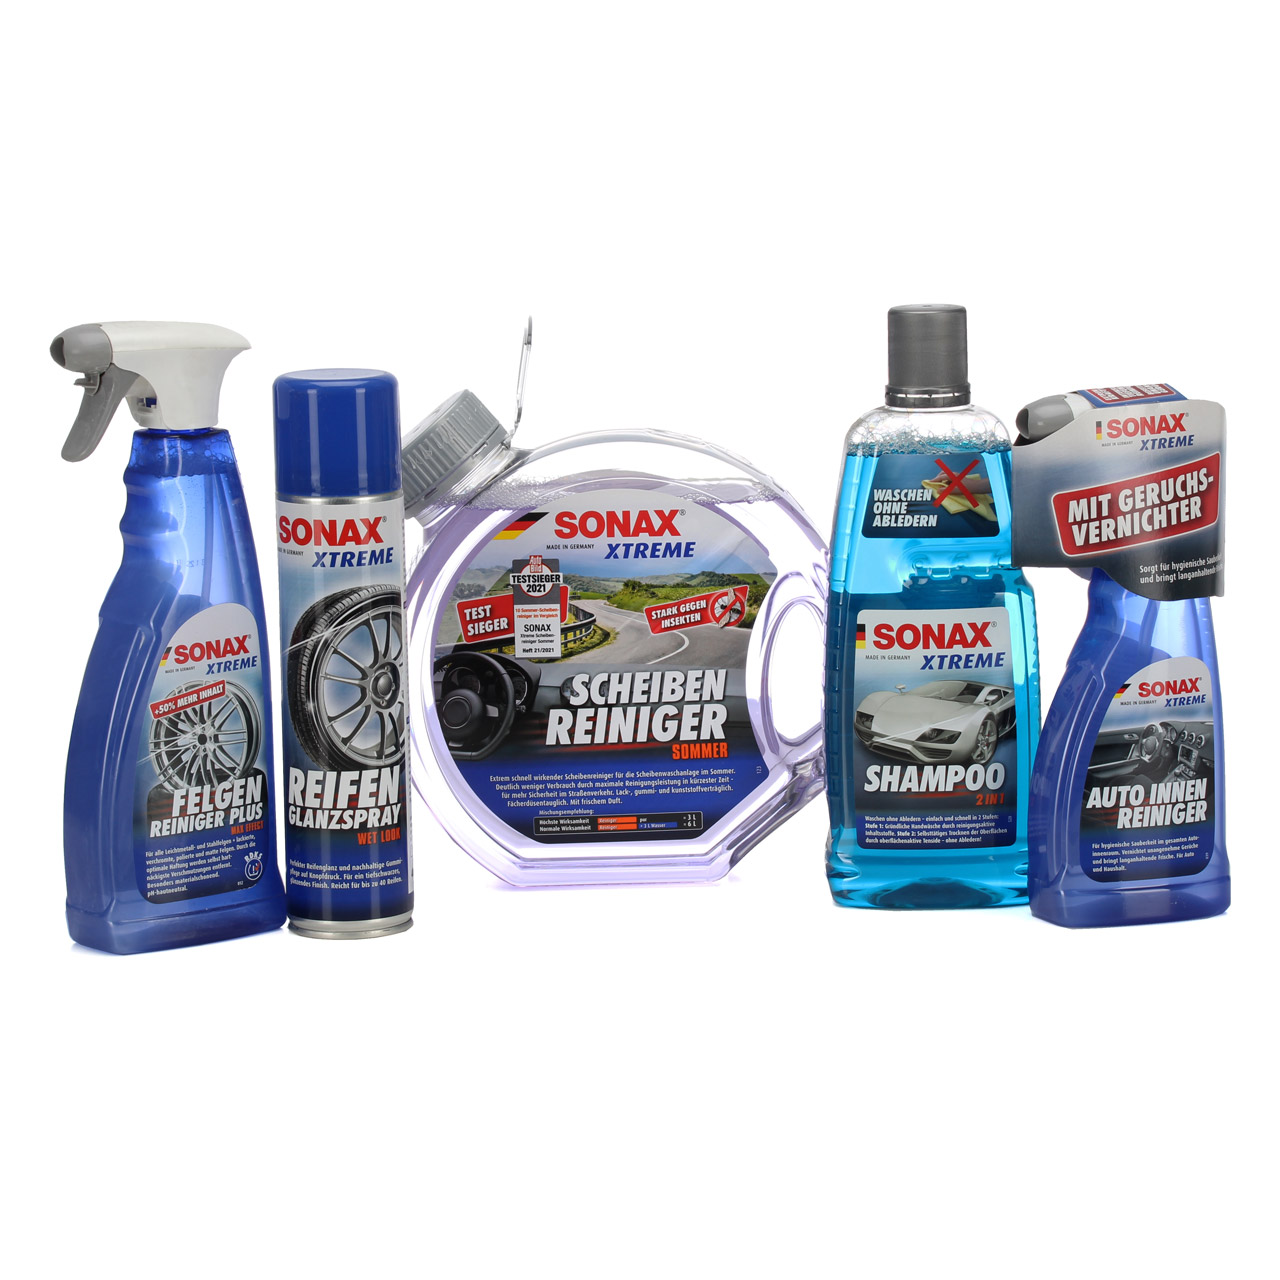 SONAX Xtreme Innen und Außen Pflege Set - Shampoo FelgenReiniger Scheibe Reifen